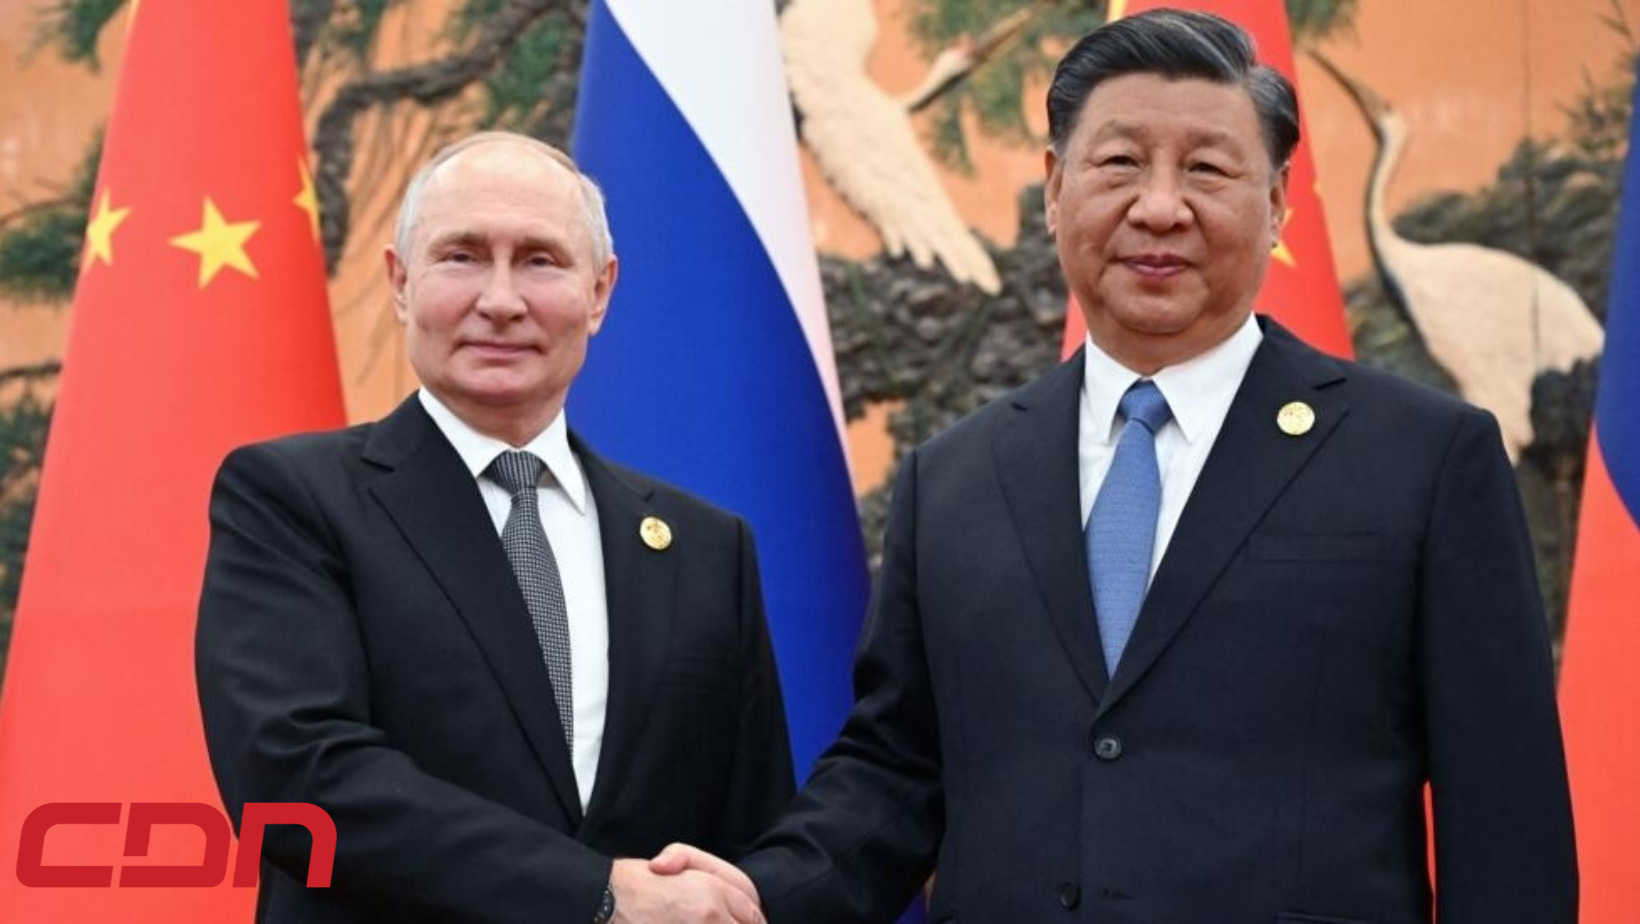 El presidente de Rusia, Vladímir Putin y el presidente de la República Popular China, Xi Jinping. Foto: CDN Digital